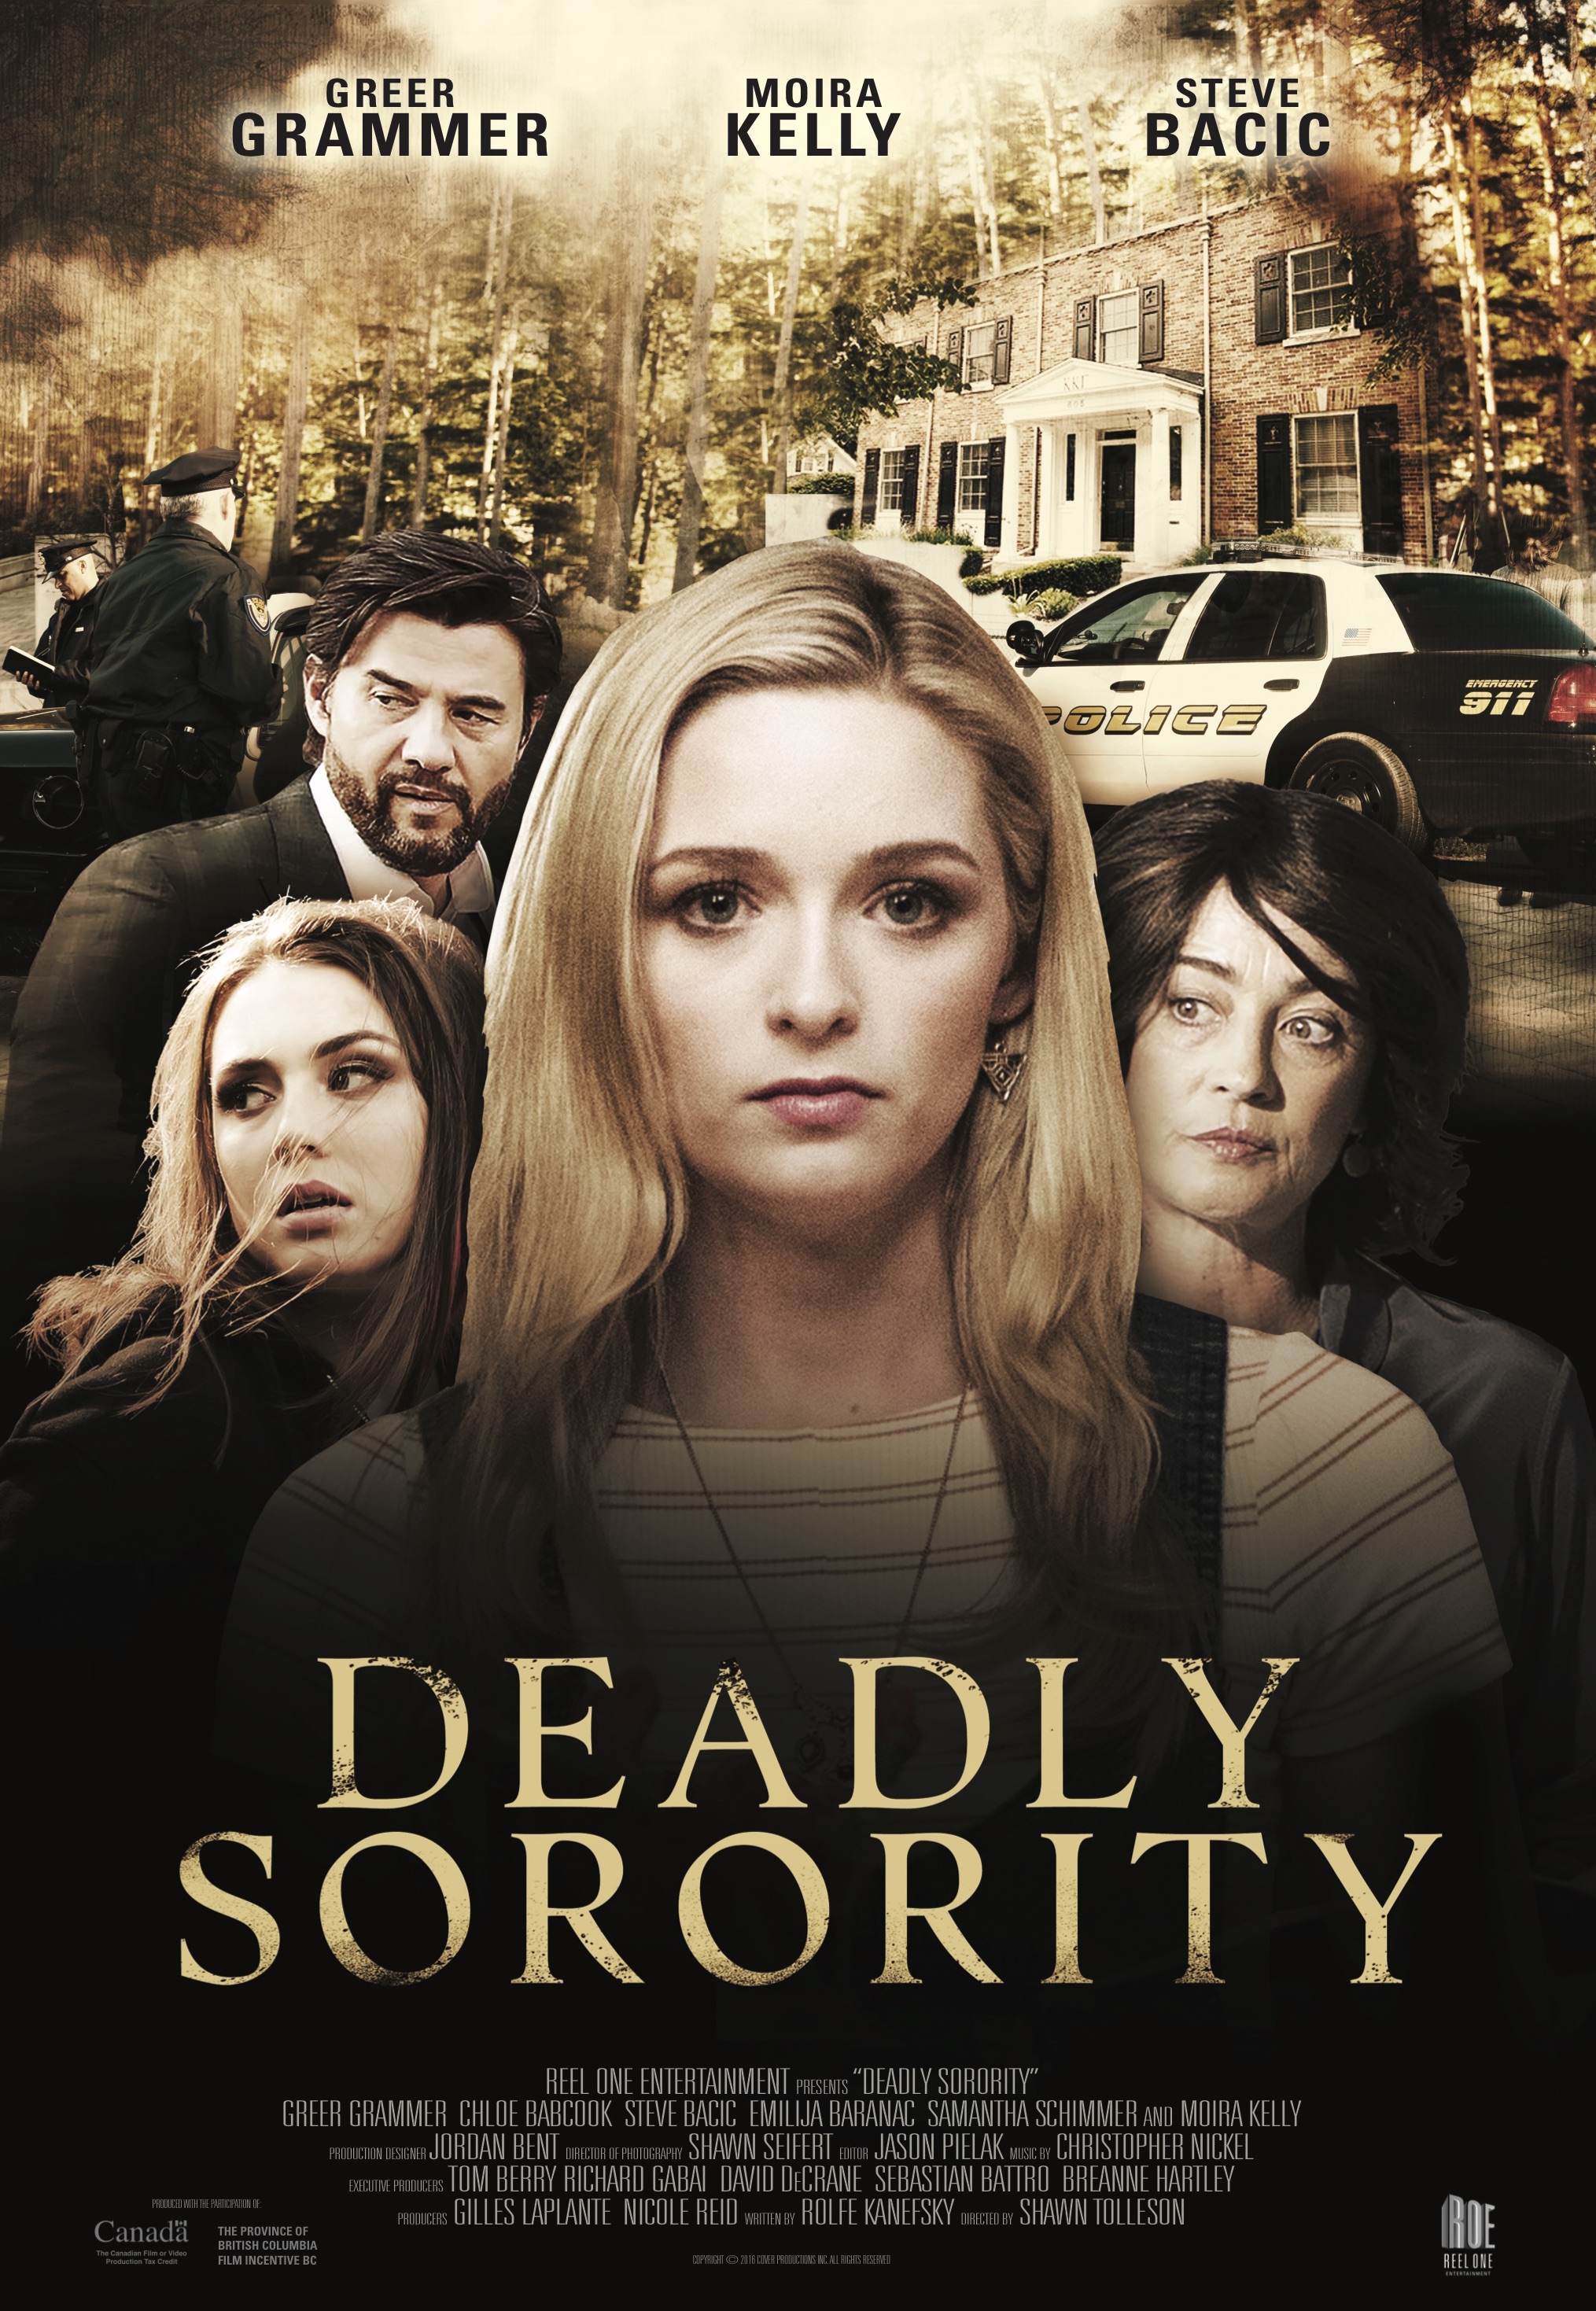 Deadly Sorority (2017) starring Greer Grammer on DVD on DVD